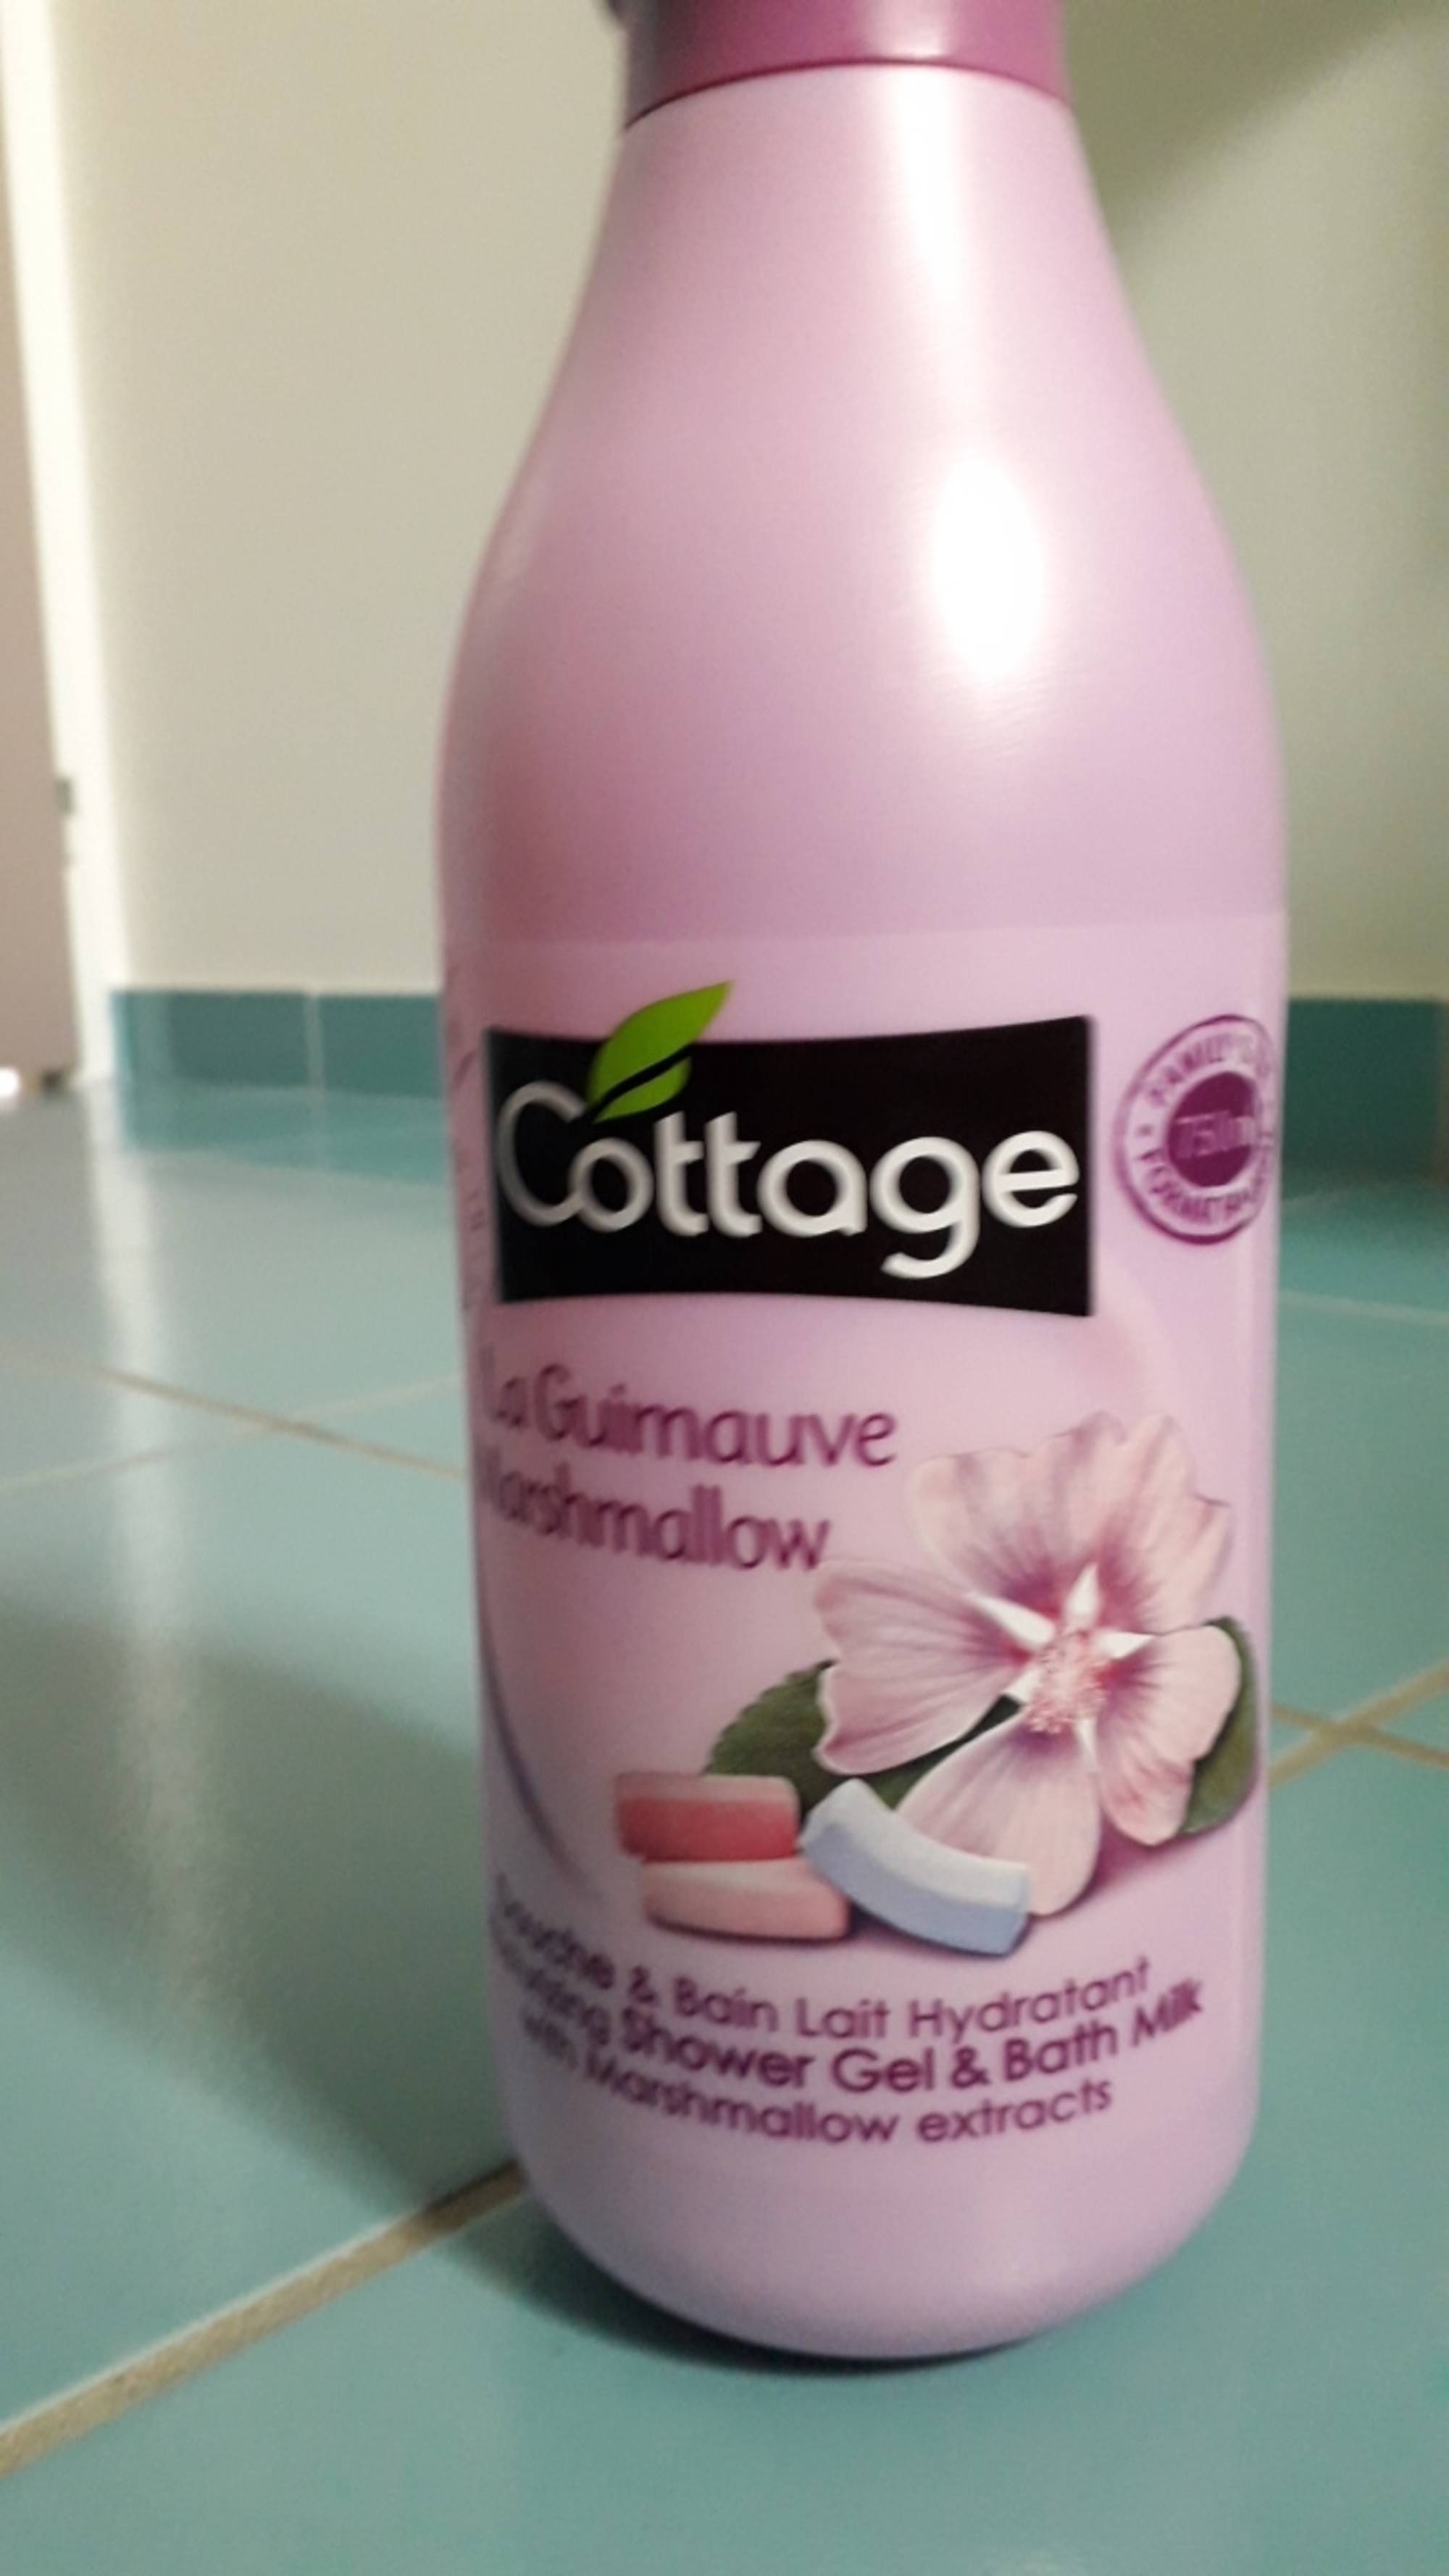 Cottage Douche Lait Hydratant - Douce Guimauve - INCI Beauty